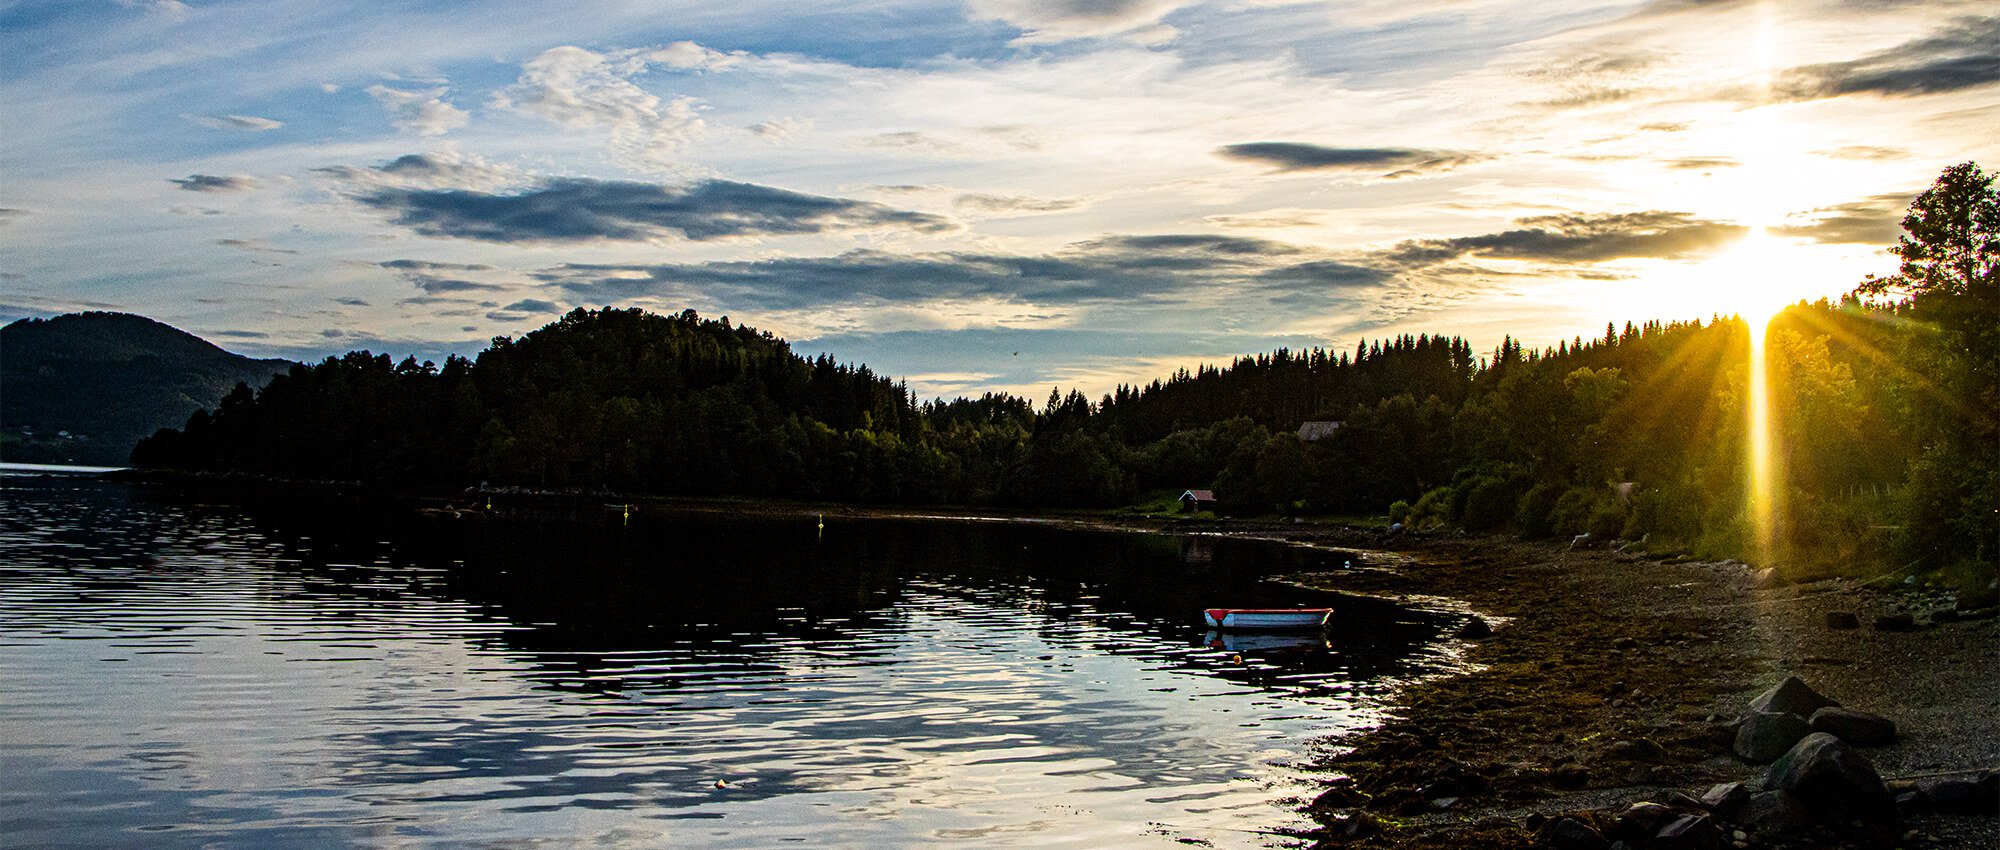 Workation in Norwegen, Anreise am Abend in Skodje mit wunderschönem Sonnenuntergang